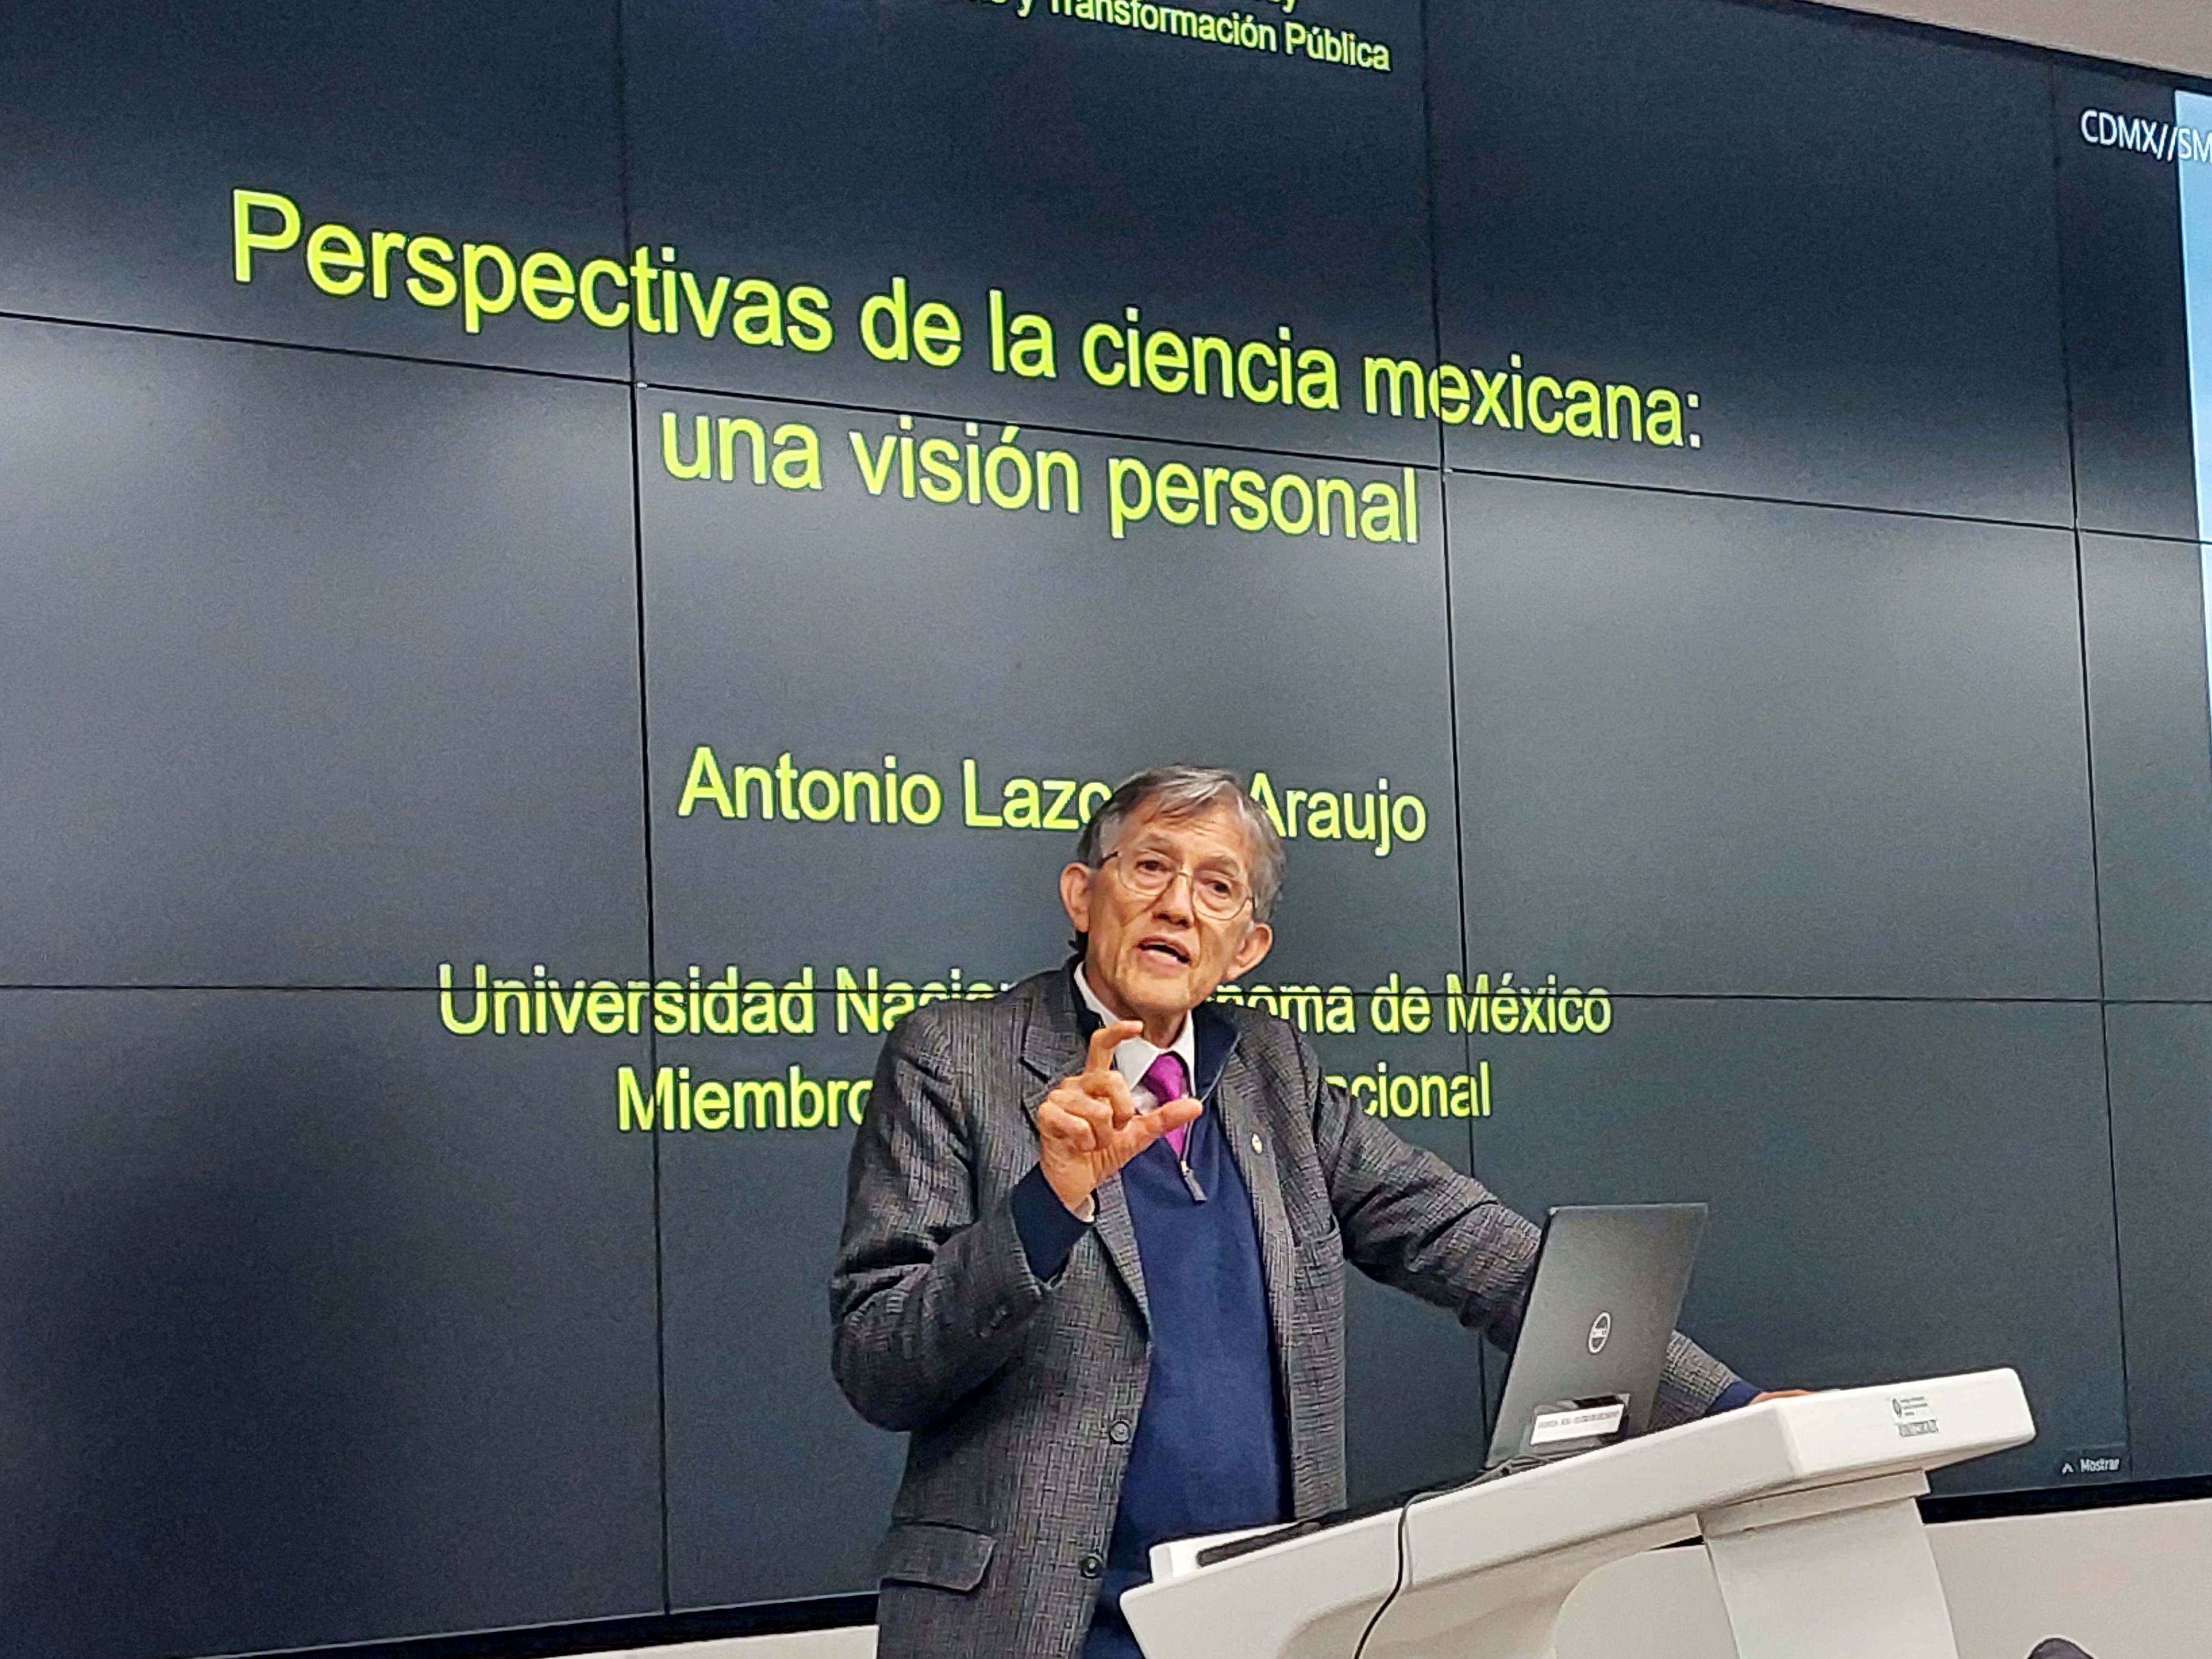 conferencia de antonio lazano sobre perspectivas de la ciencia mexicana